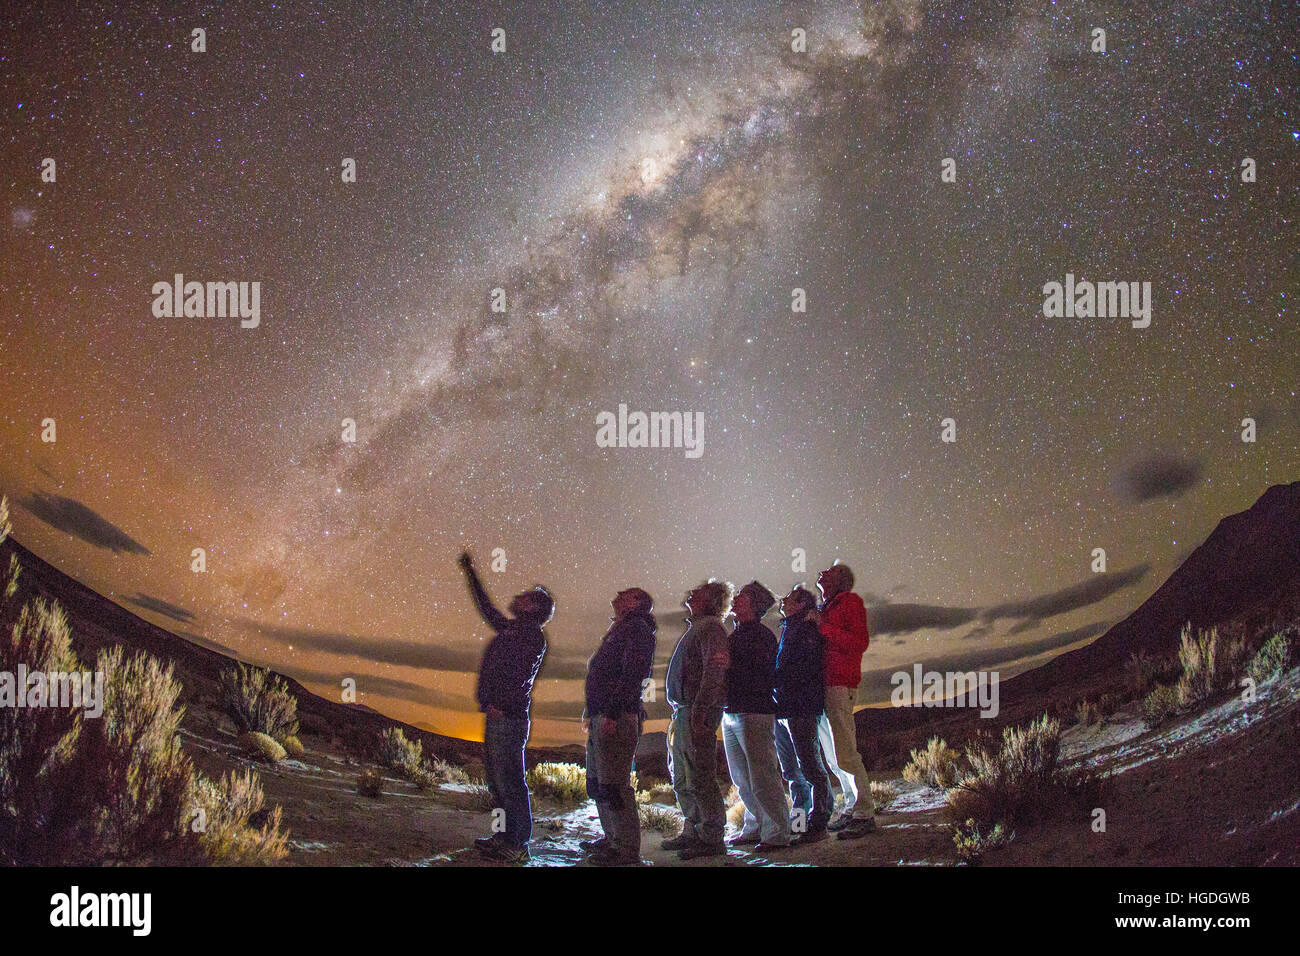 Star sky, Bolivia Foto de stock